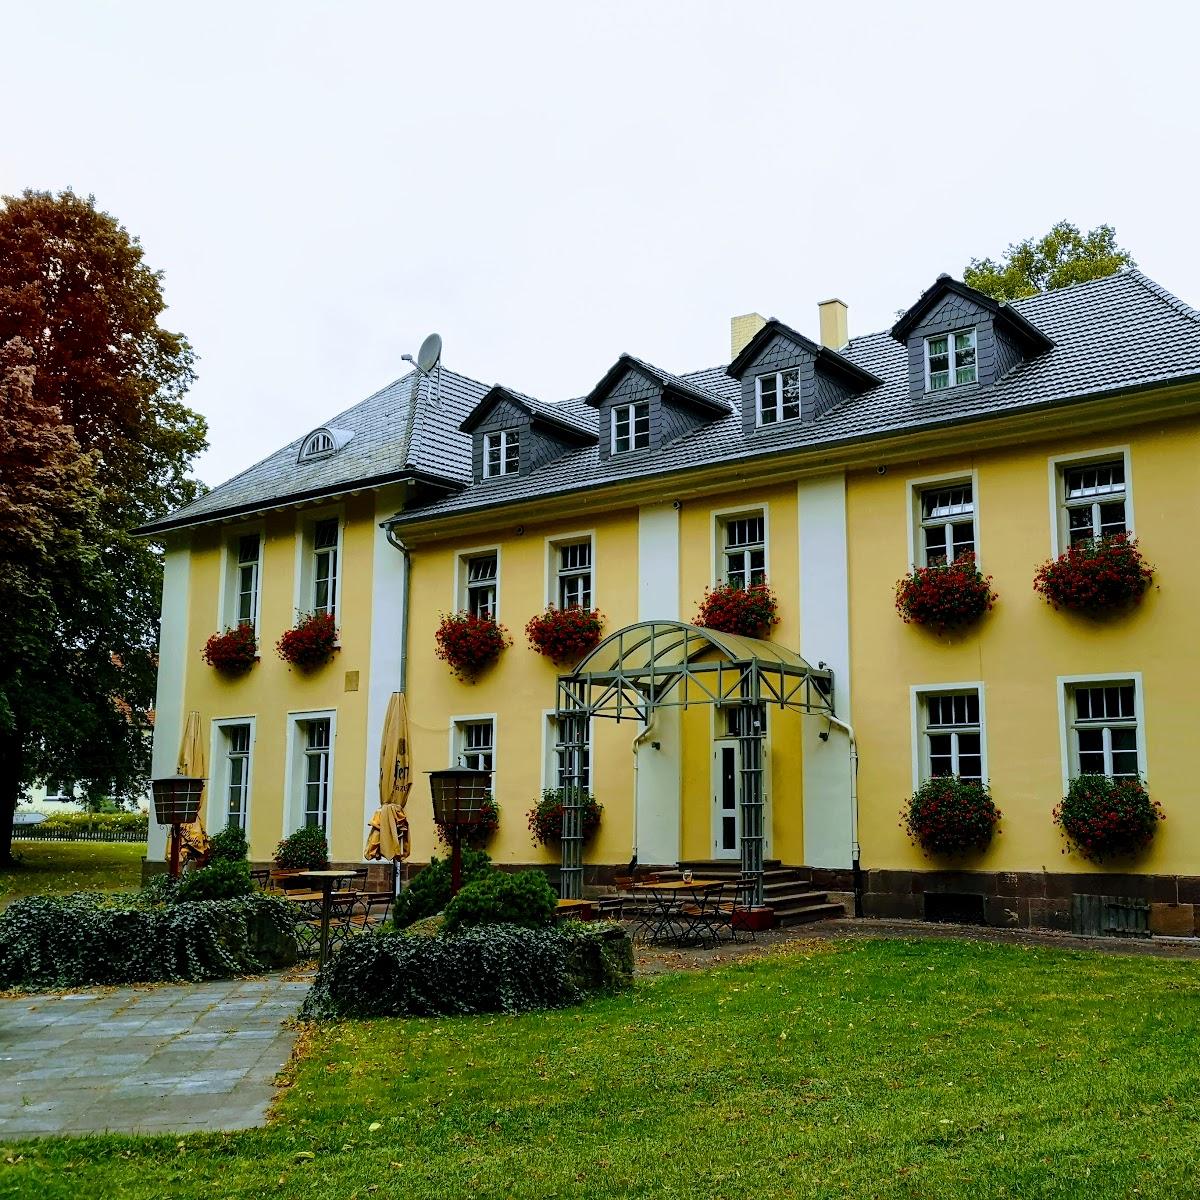 Restaurant "Köpenick Wirtshaus Hotel Übernachtung" in Hofgeismar